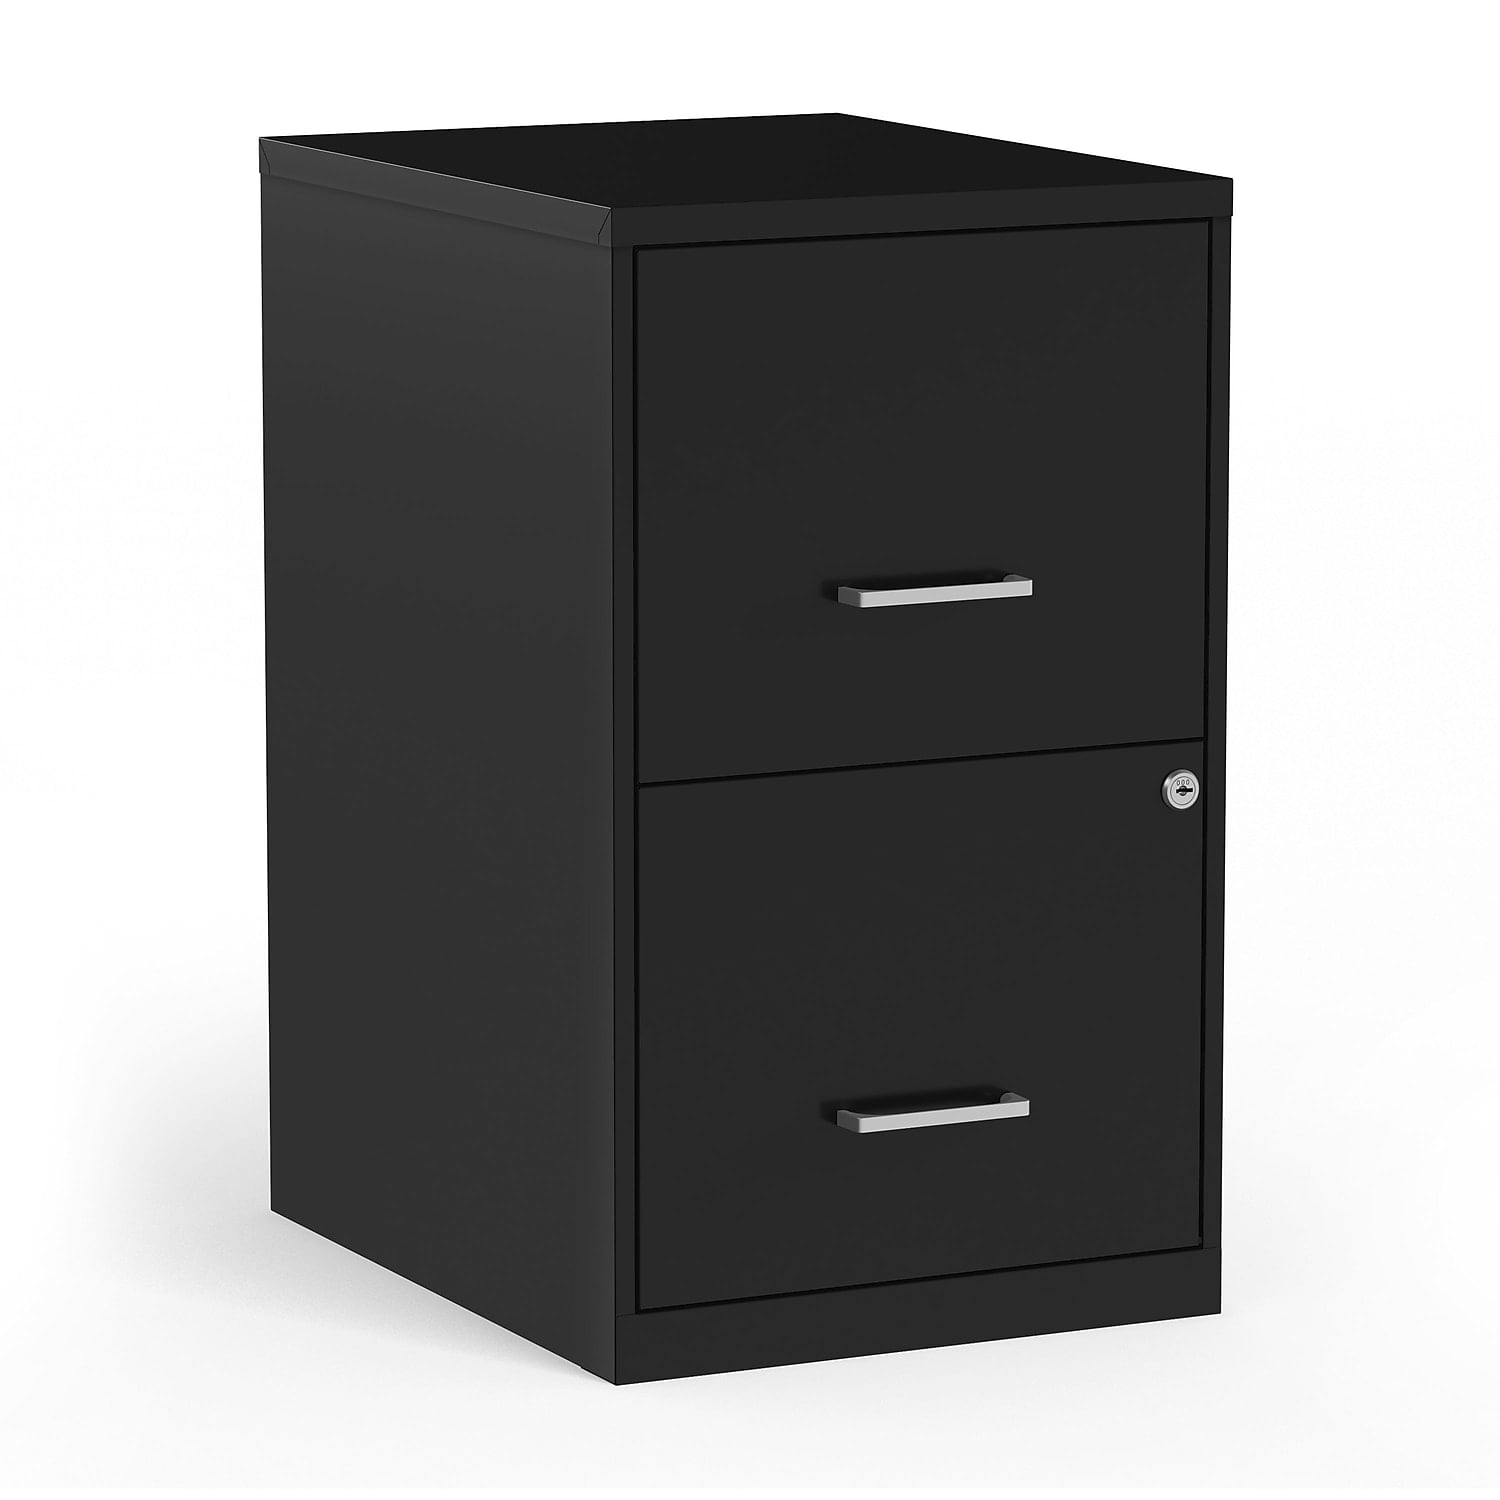 Metal Filing Cabinet Black Steel Storage Lockable Office Cupboard 3/4/5 Layer 